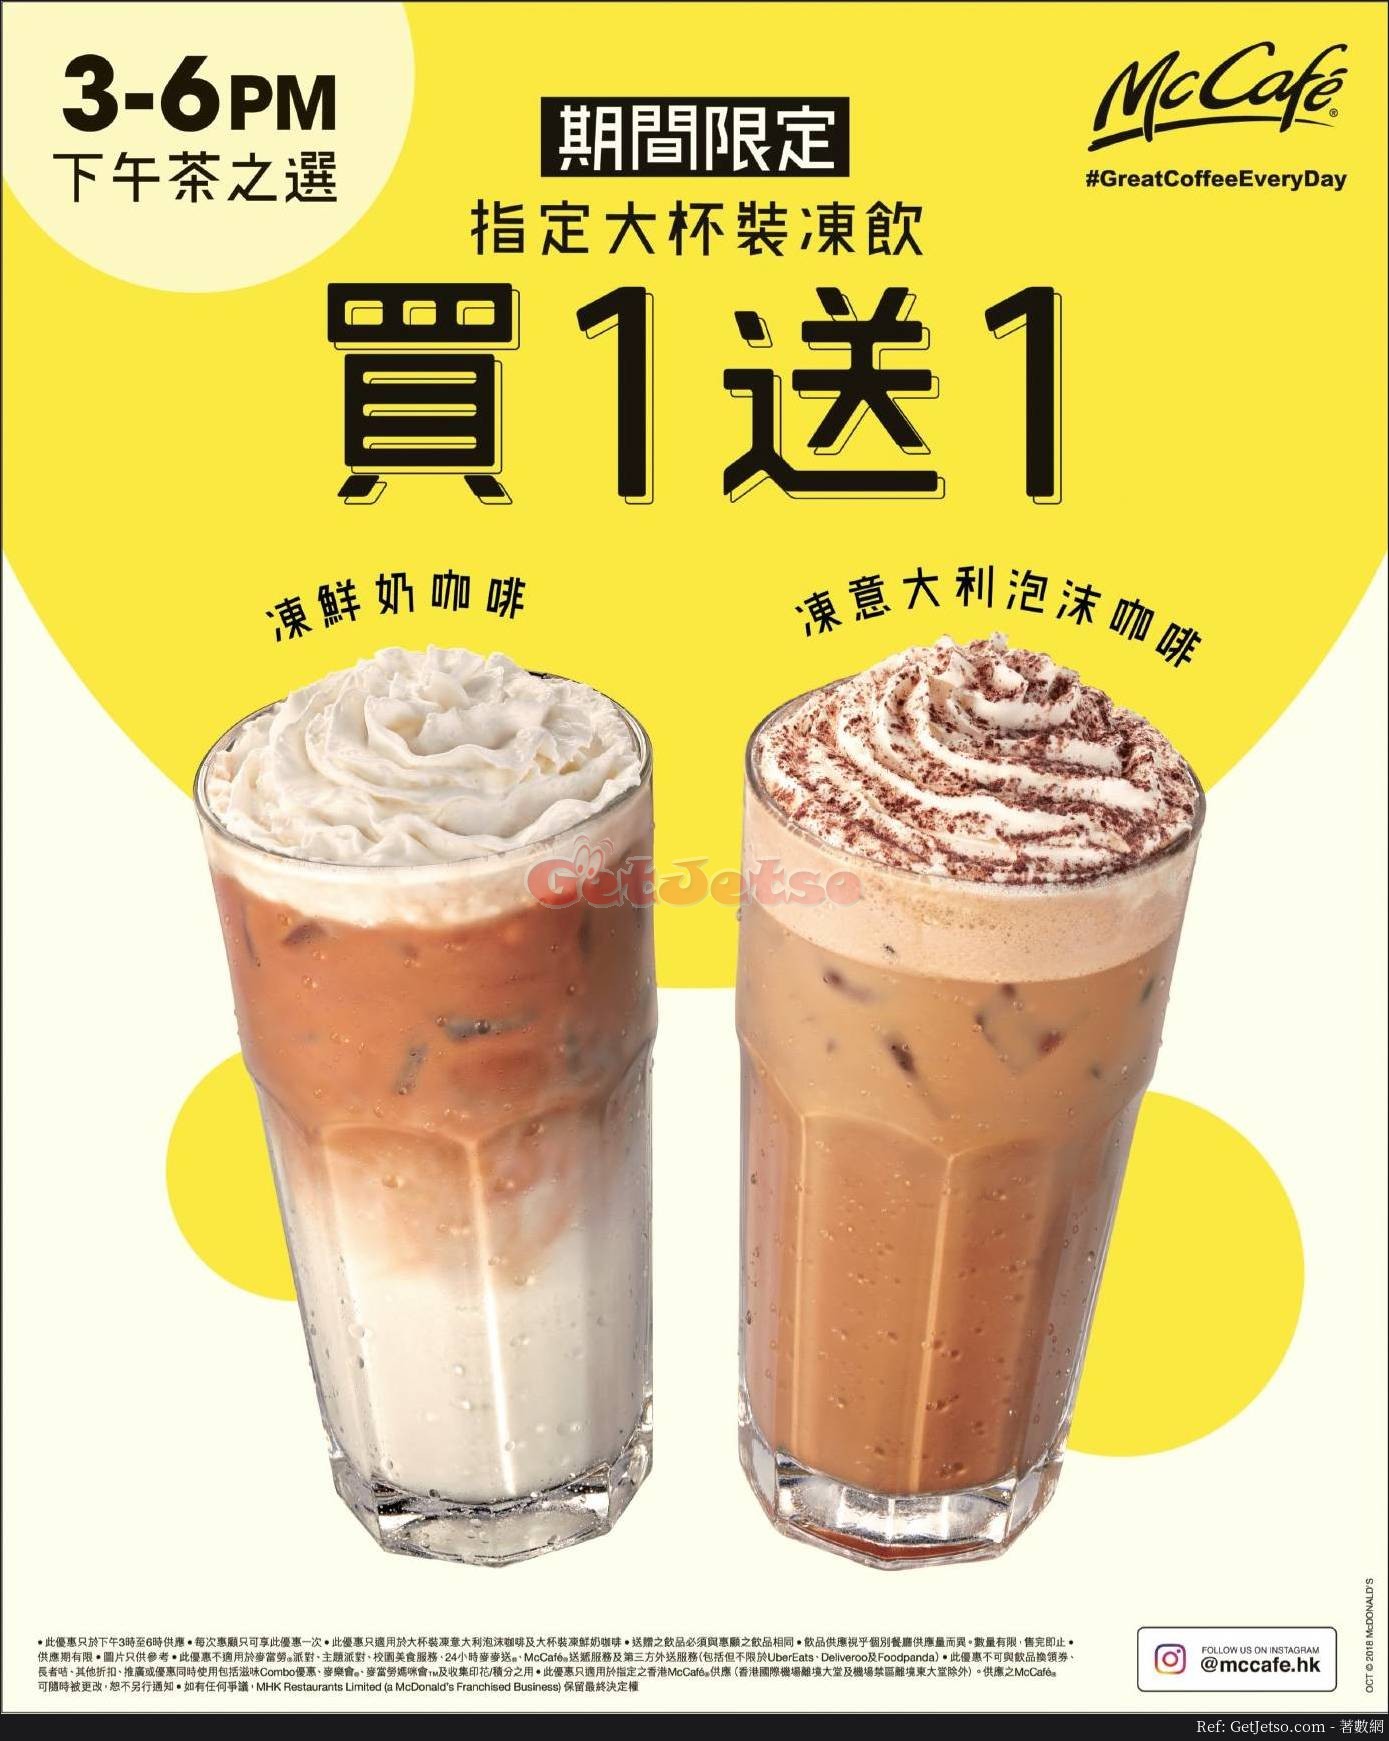 麥當勞McCafe指定下午茶大杯裝凍飲買1送1優惠(18年10月16日起)圖片1